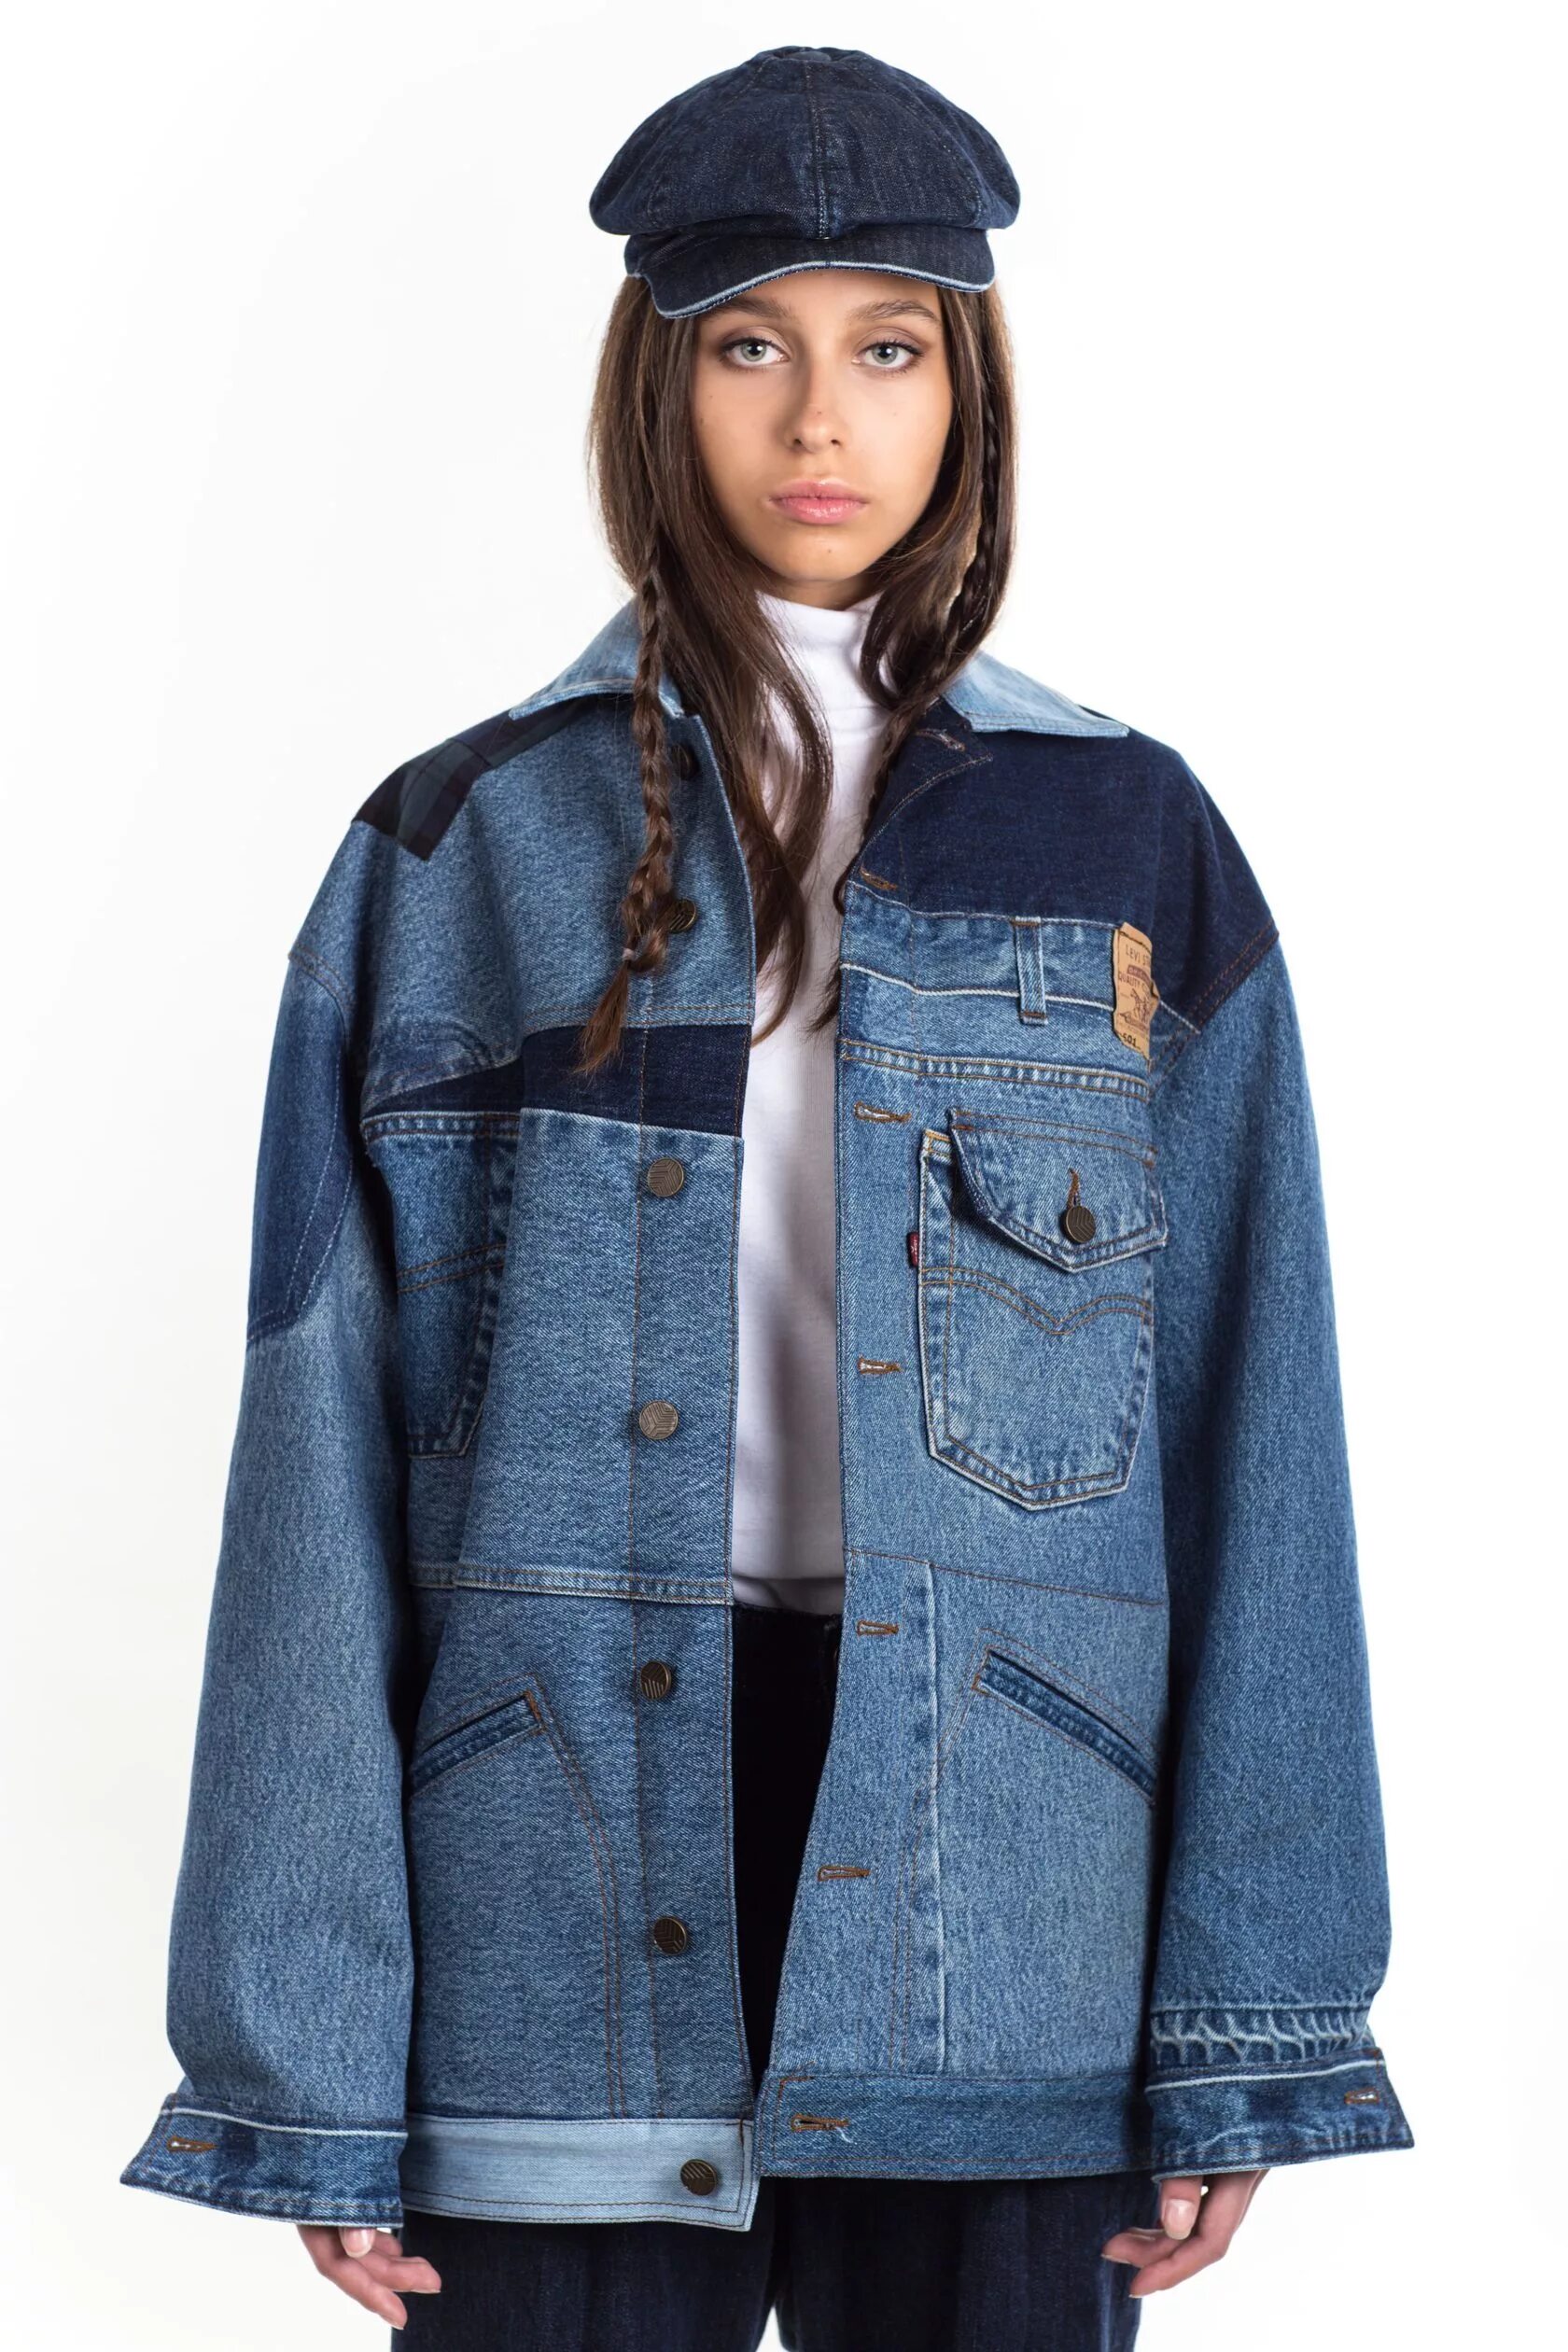 Валберис джинсовые куртки для женщин. Balenciaga джинсовая куртка женская 2021. Джинсовая куртка комбинированная. Джинсовая куртка пэчворк.